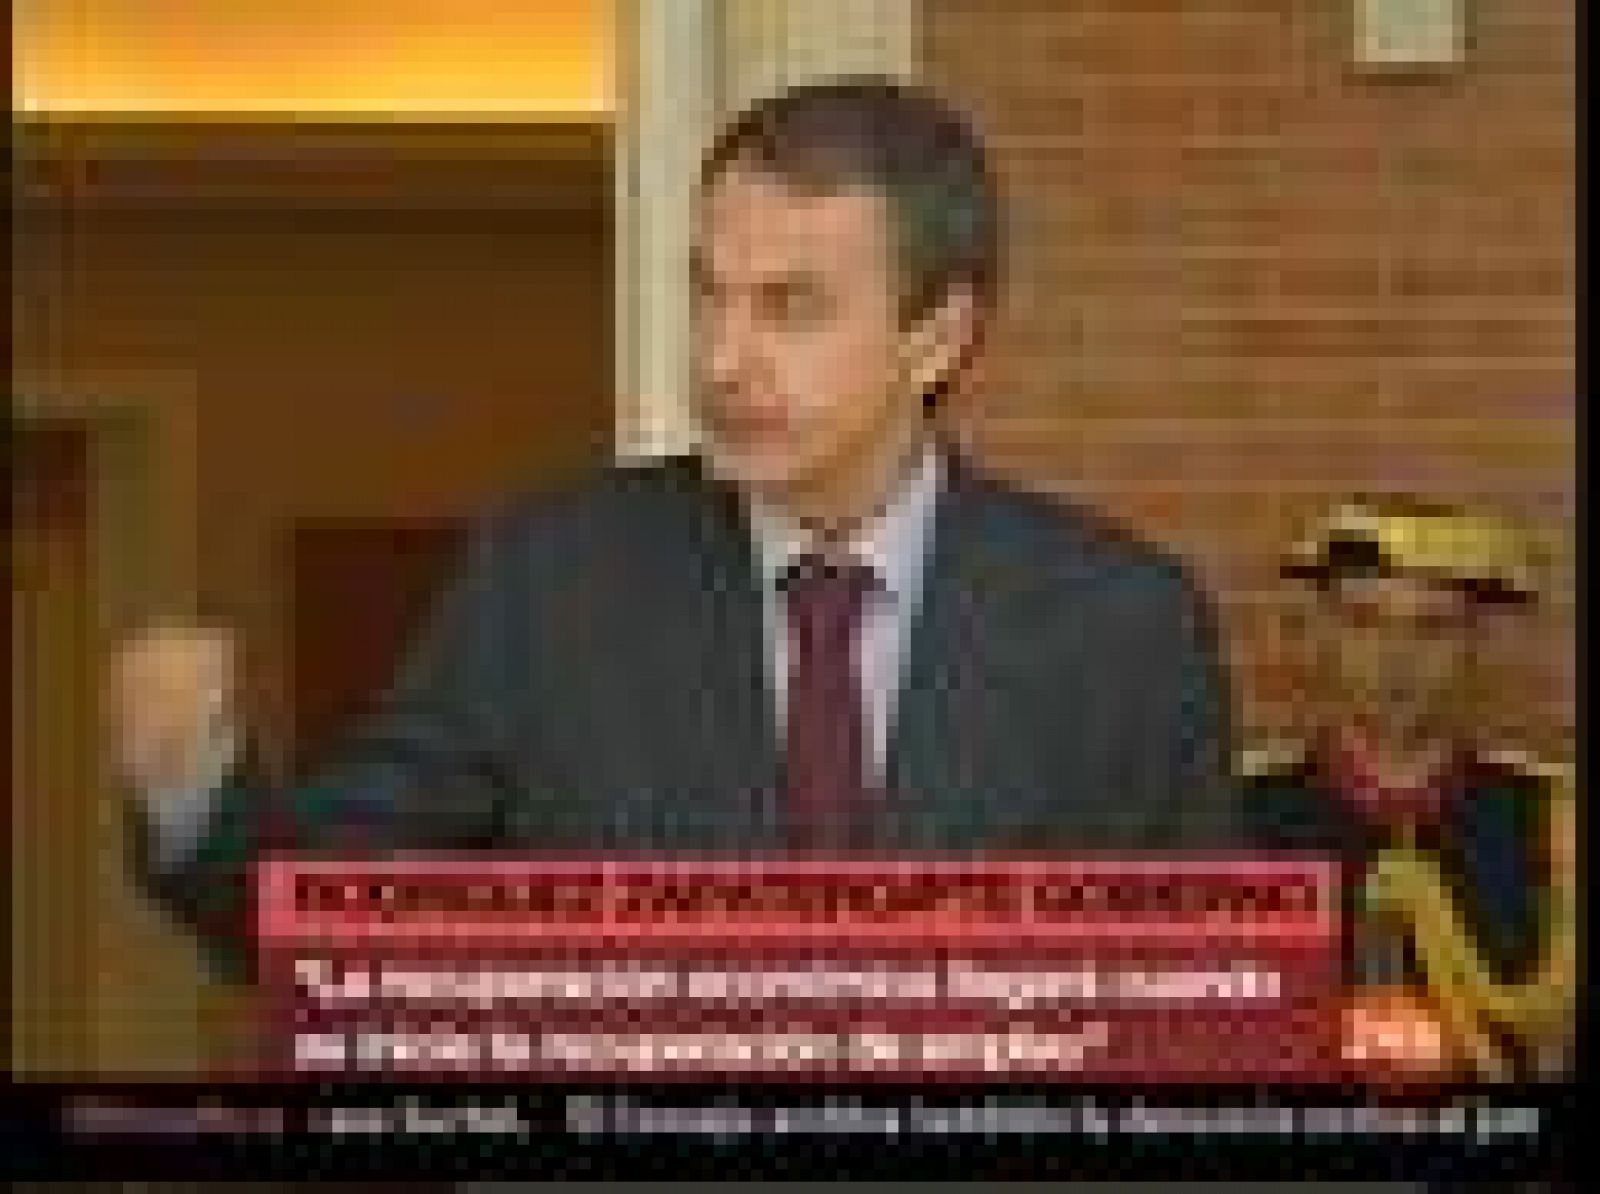 El presidente del Gobierno, José Luis Rodríguez Zapatero, ha criticado al PP por ostentar el "triste liderazgo" de ser el partido que más mociones de censura ha "promovido, amparado y permitido" con transfugas en ayuntamientos españoles. 